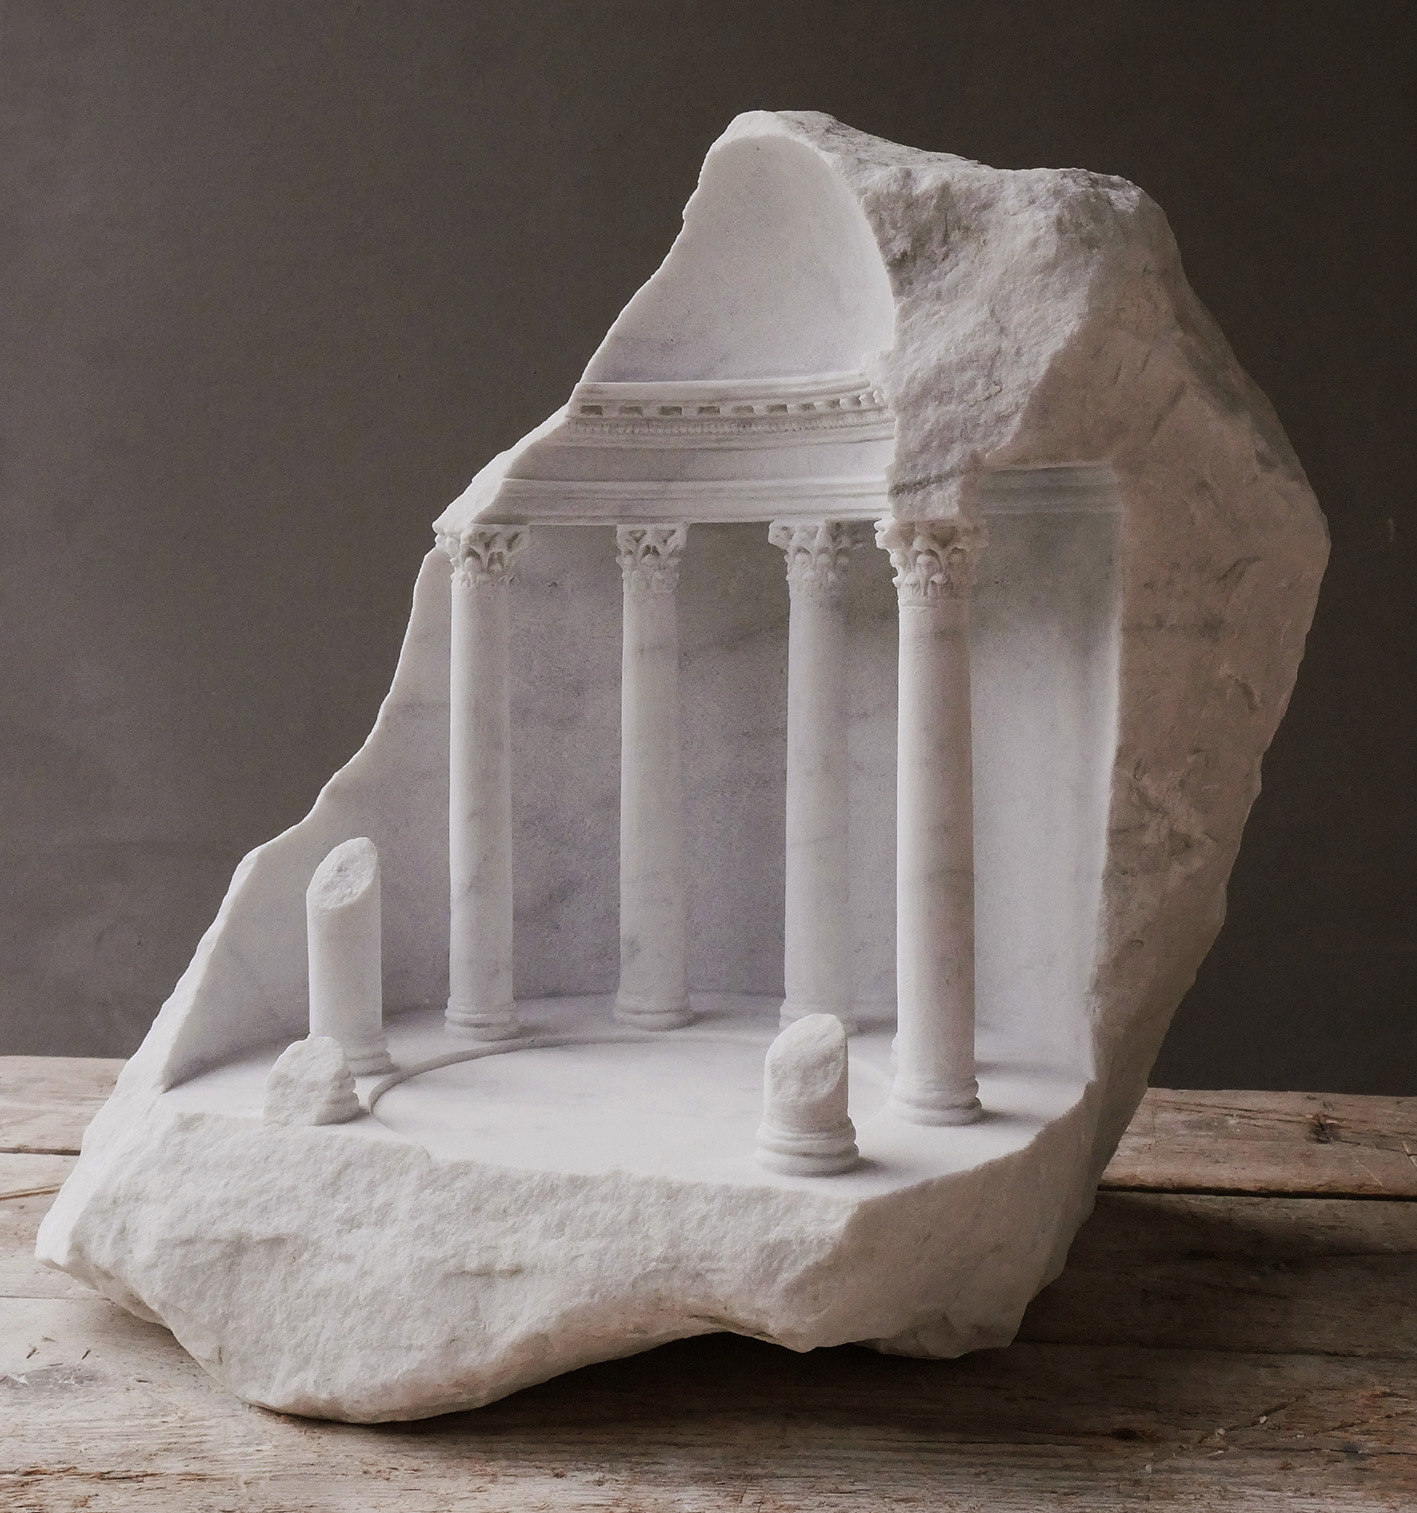 Com foco em arquitetura sagrada, o artista britânico recria edifícios em miniaturas de mármore